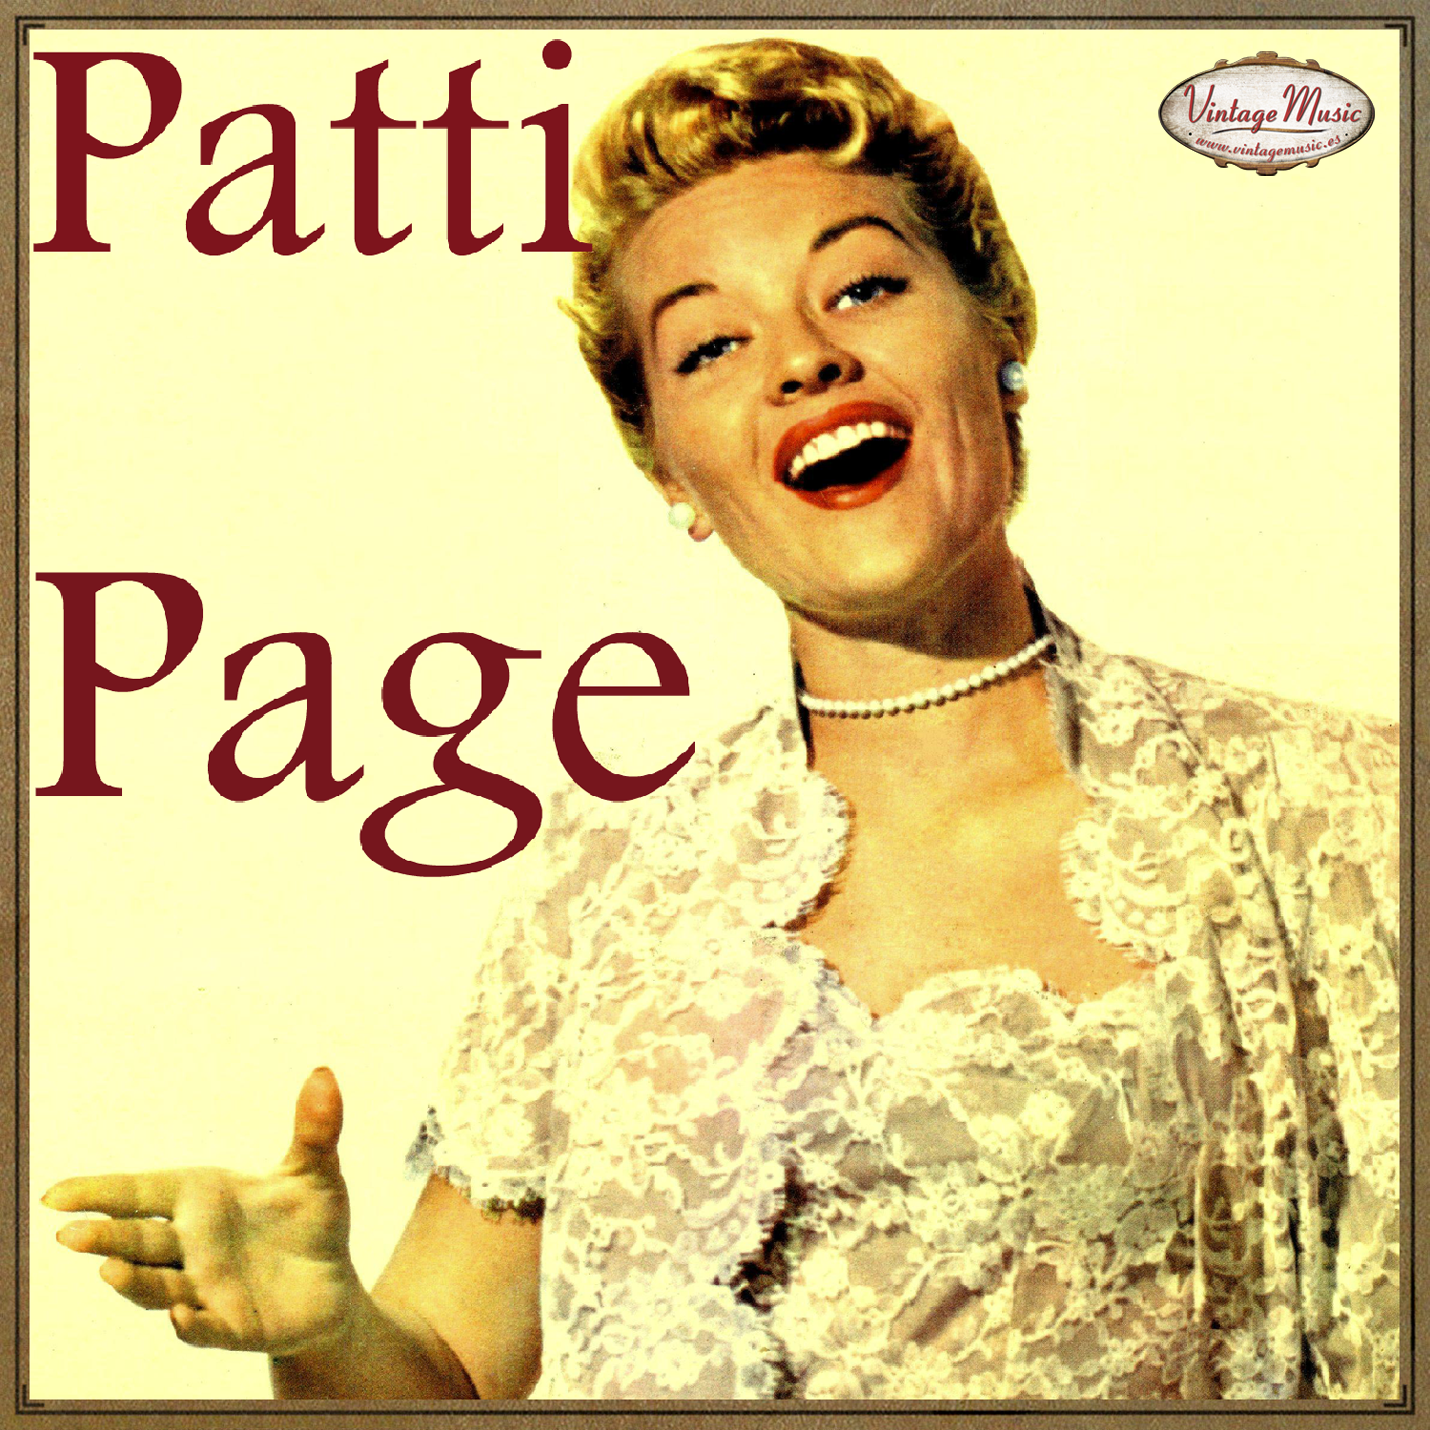 Patty Page (Colección Vintage Music)